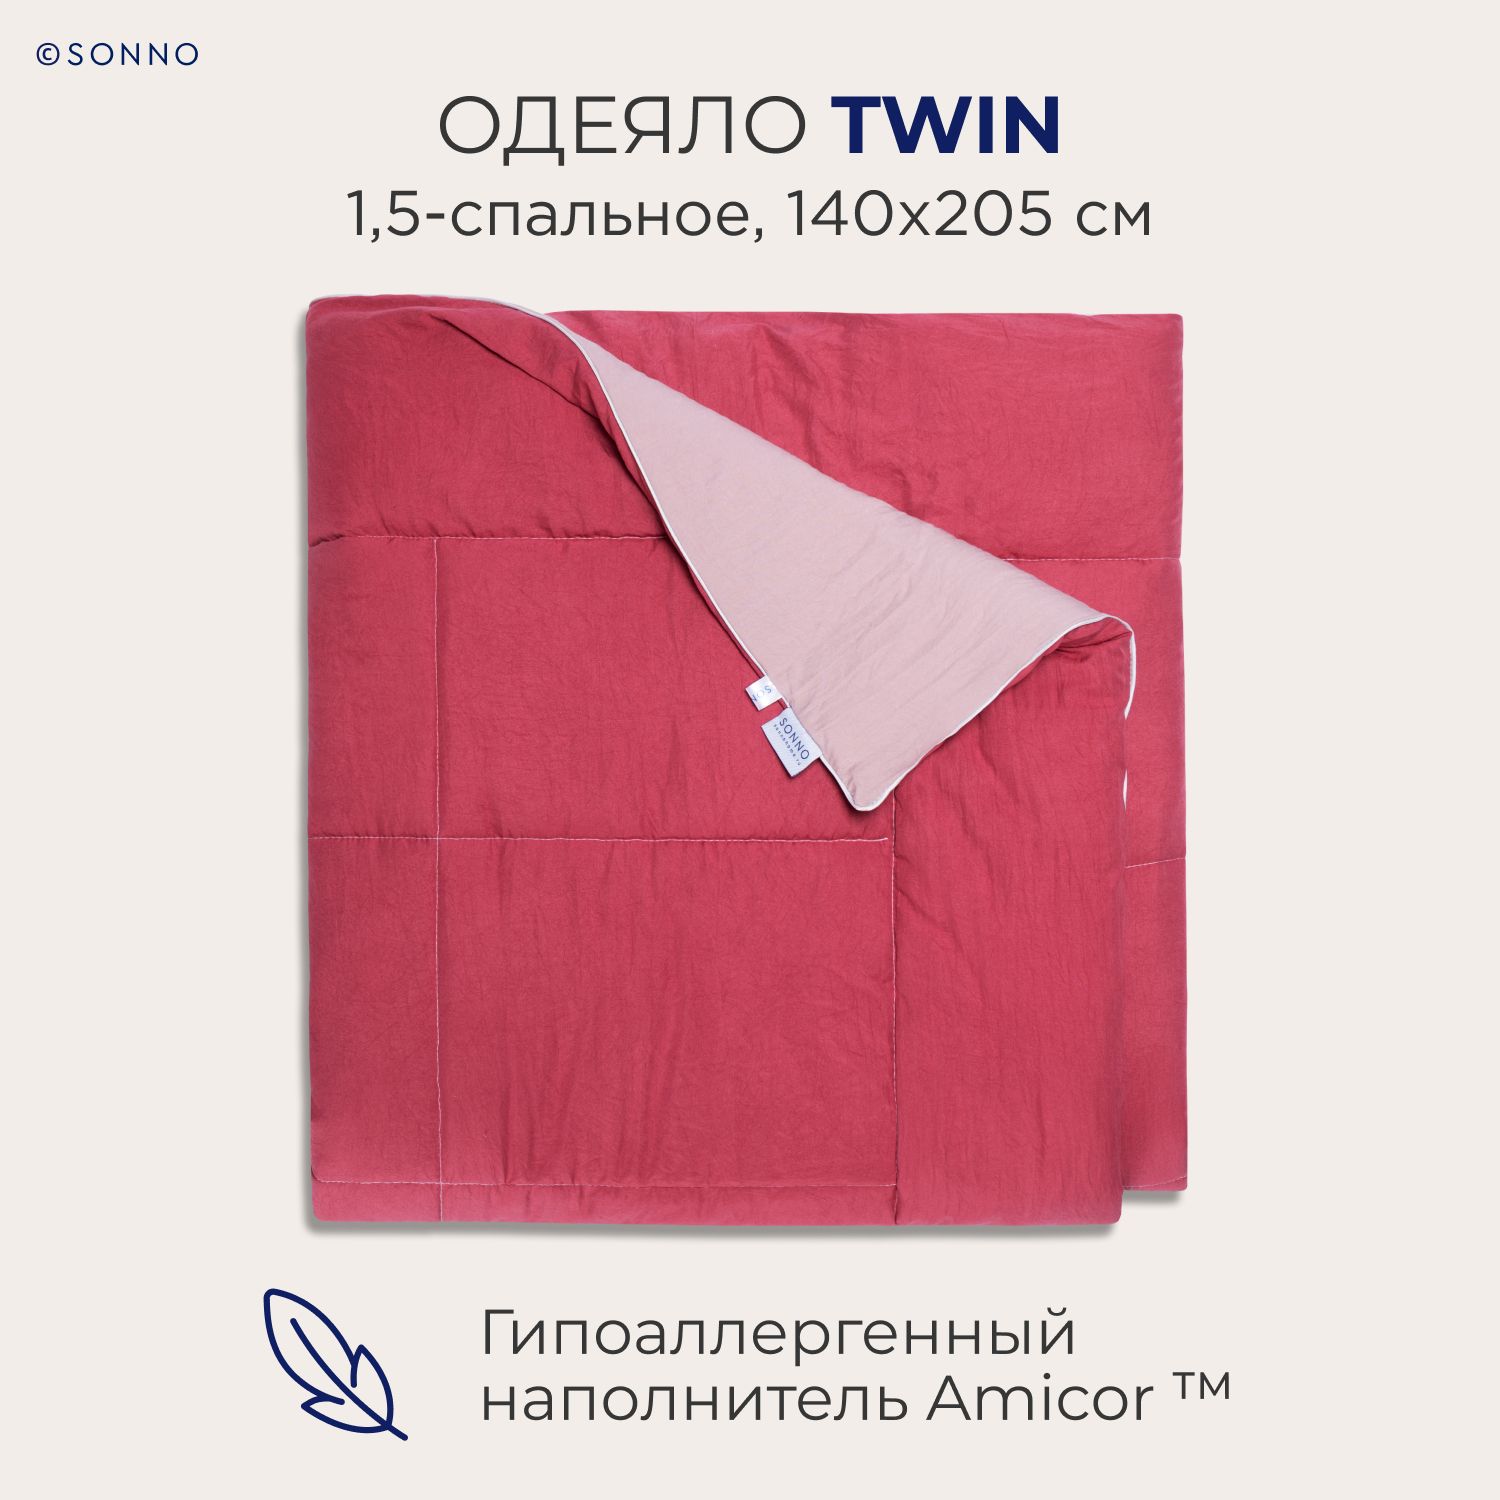 Гипоаллергенное одеяло SONNO TWIN 1,5-спальное, 140х205 см, цвет Розовый/Малиновый